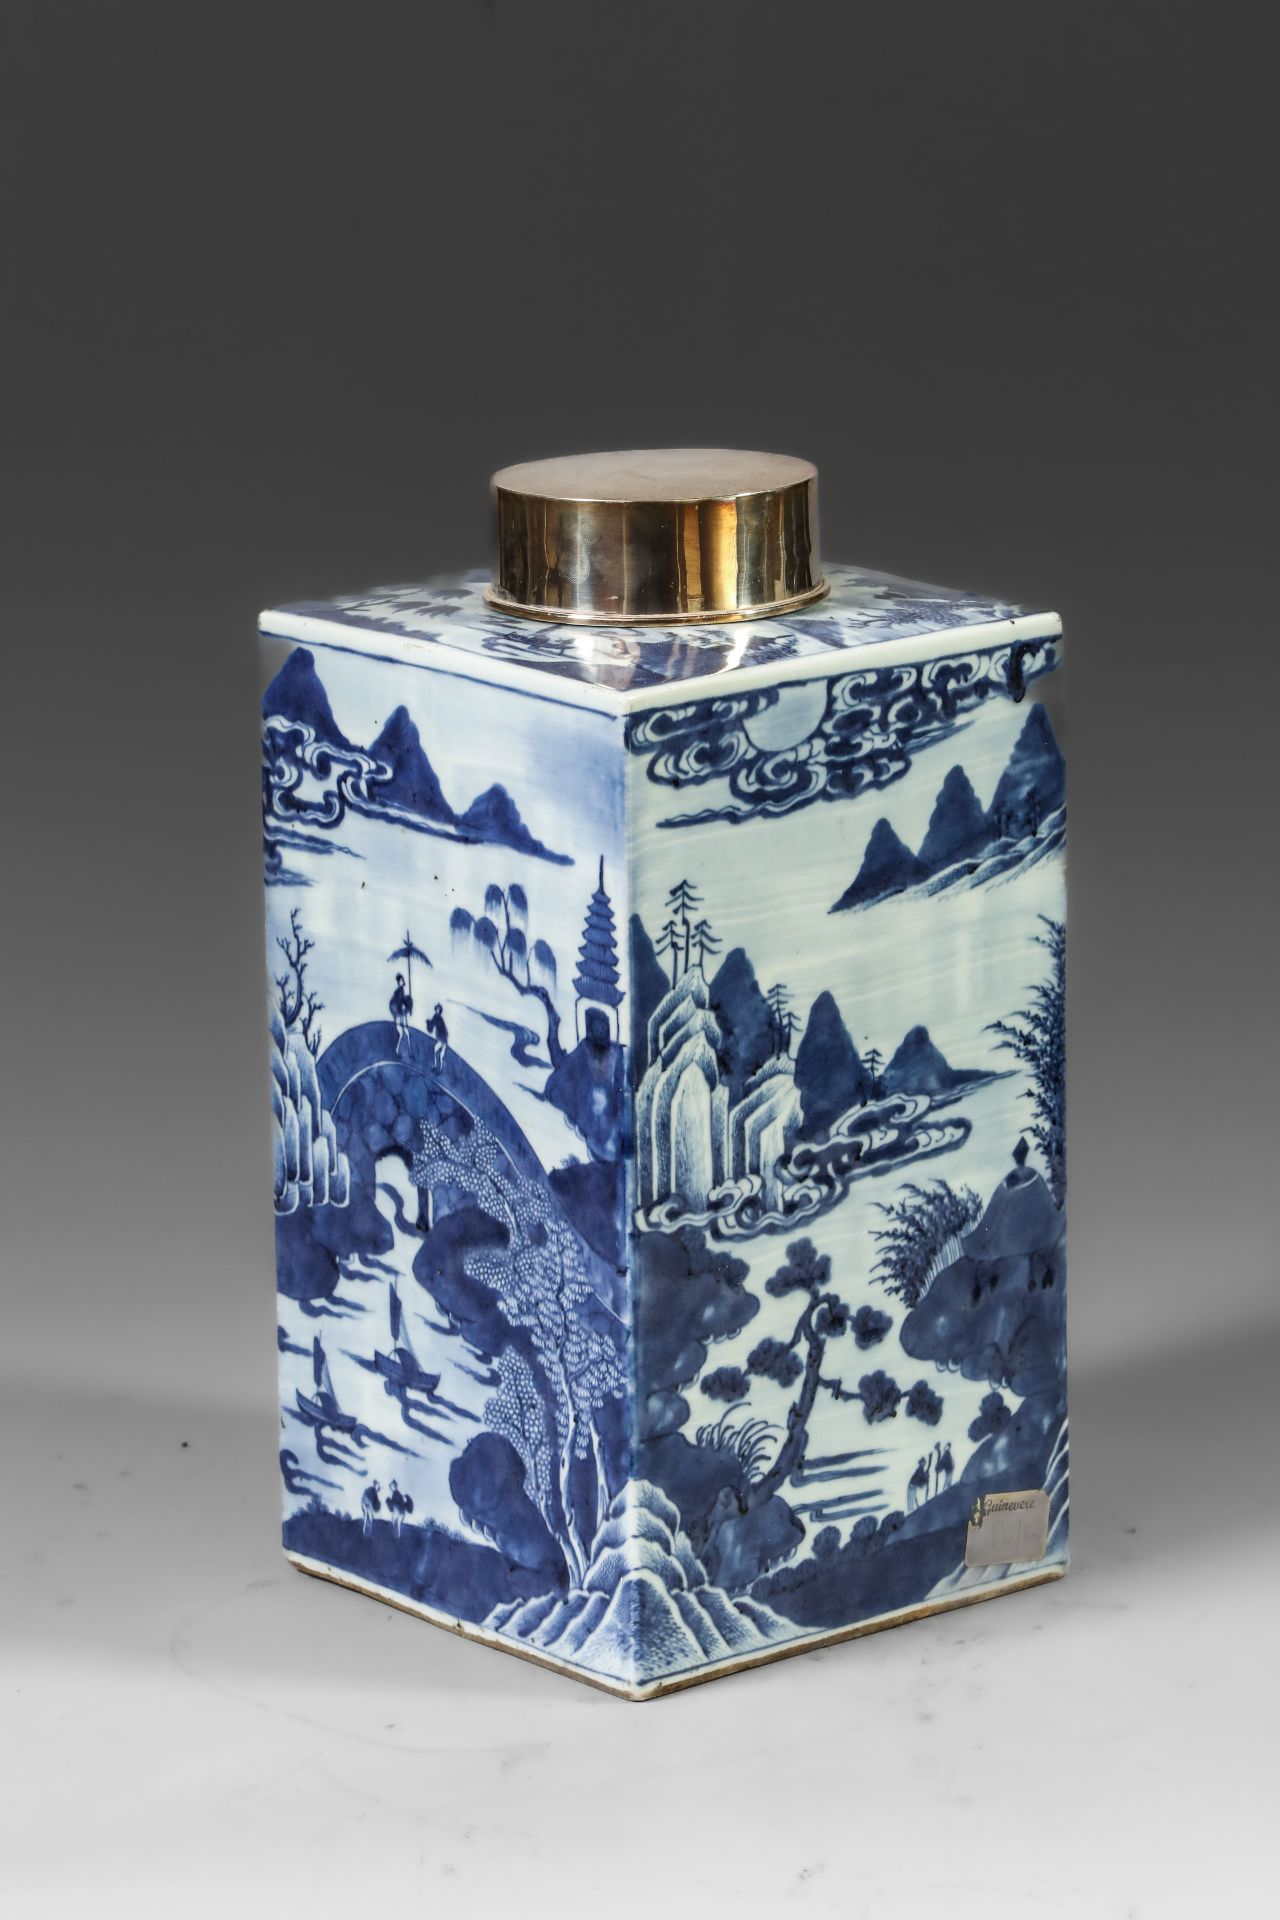 Suite de neuf pots à thé quadrangulaire en porcelaine blanche décoré en bleu sous couverte de - Image 11 of 47